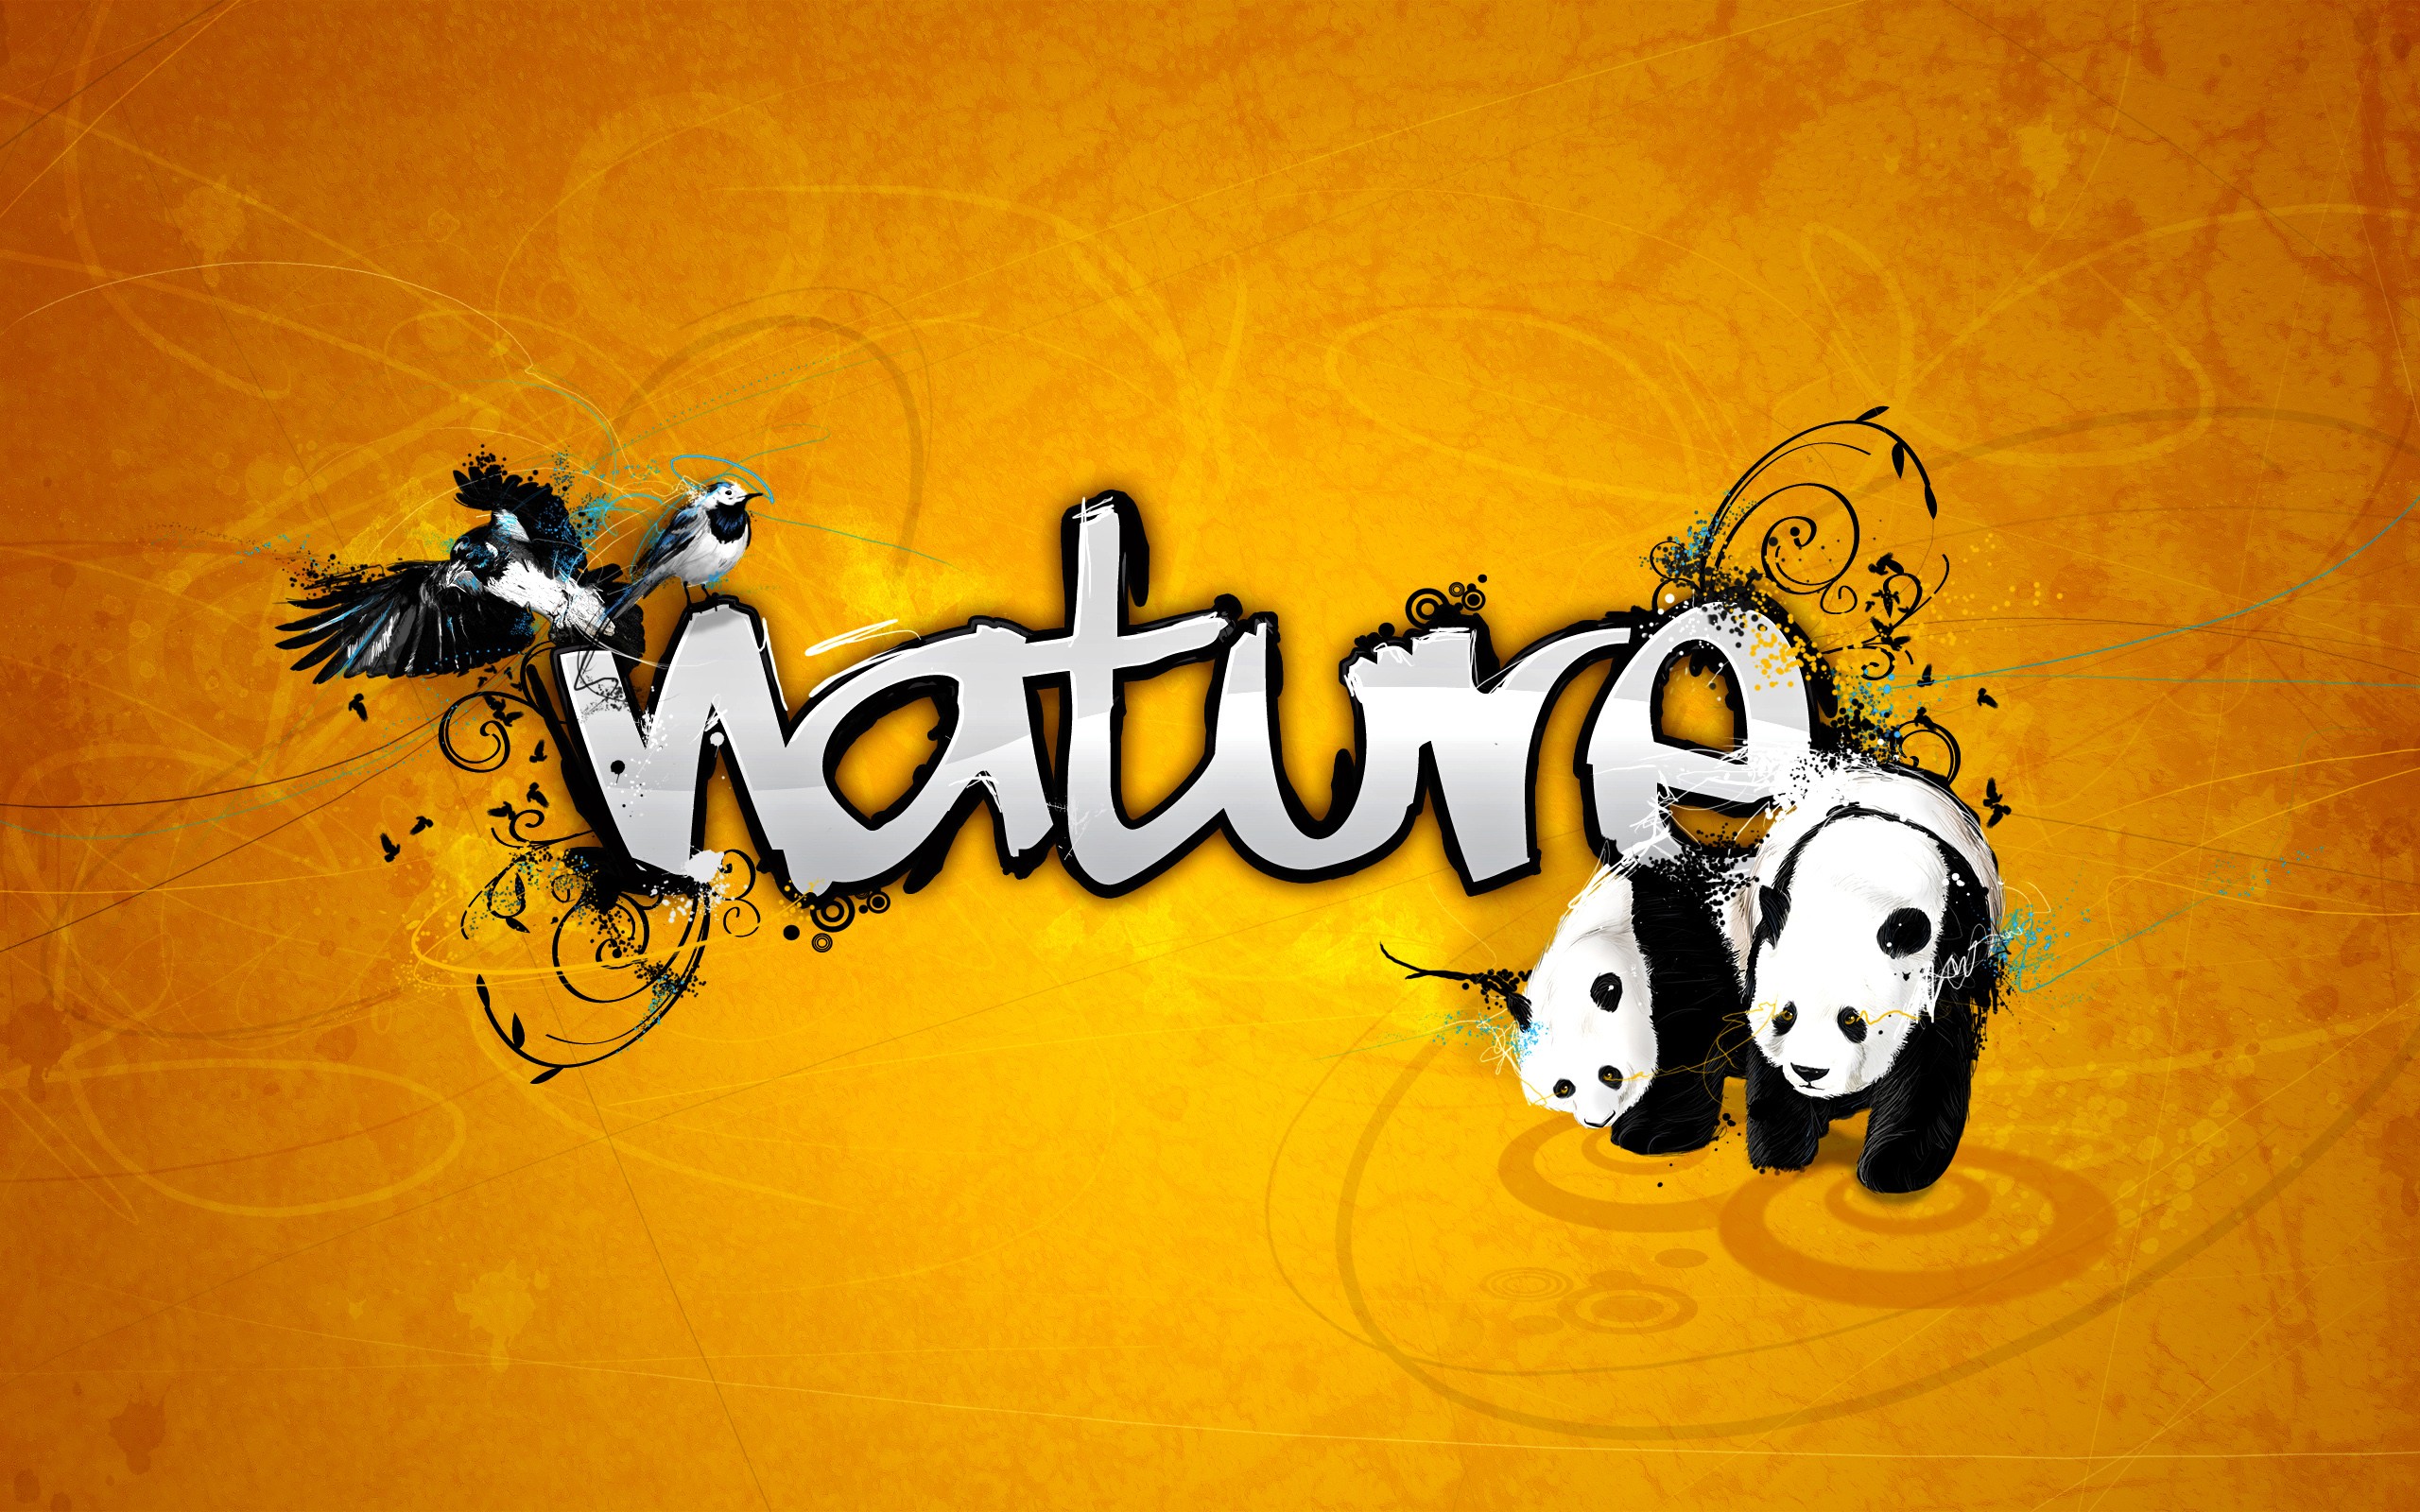 General 2560x1600 panda birds digital art animals typography mammals orange background